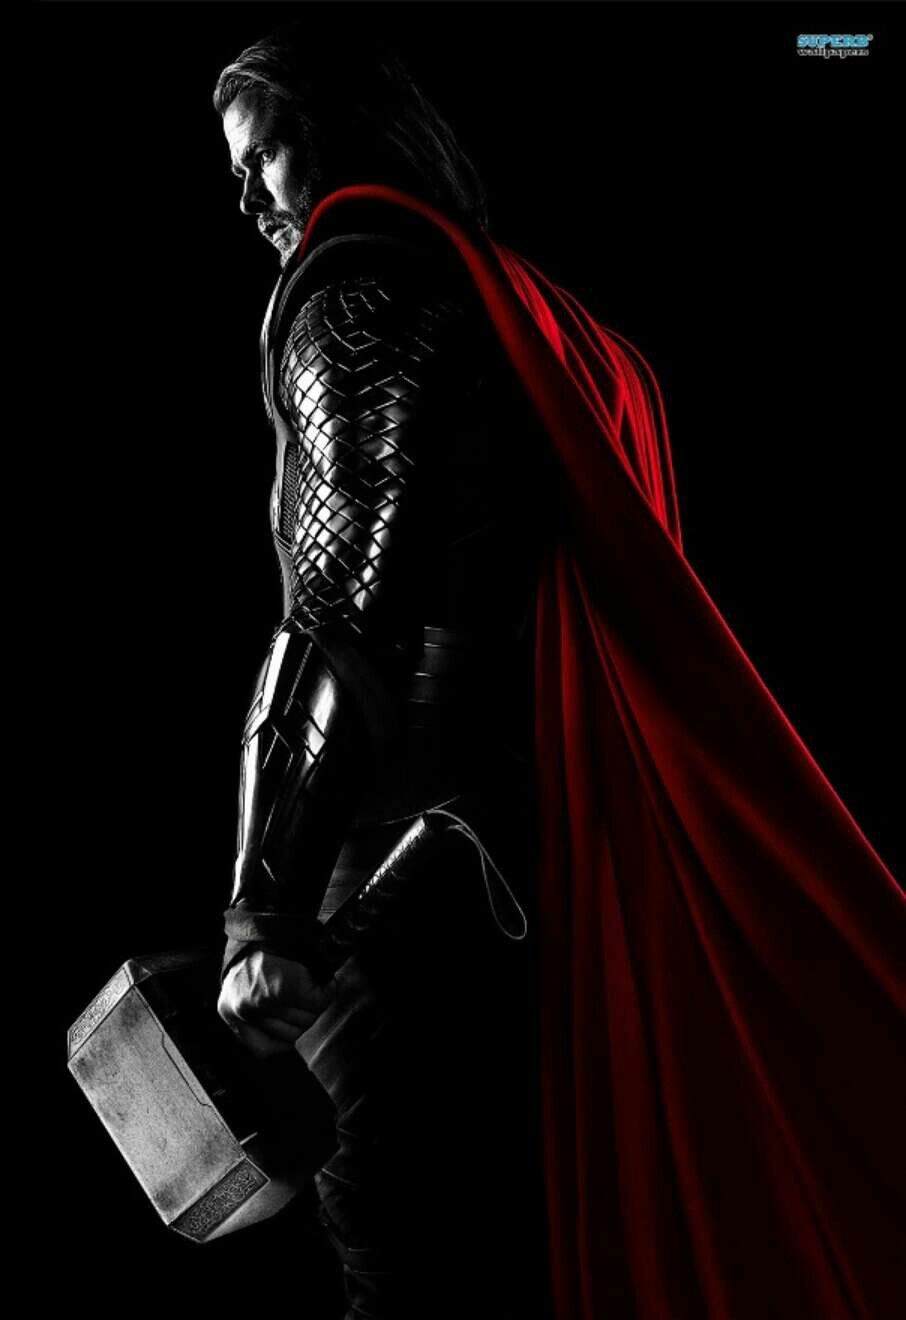 モバイル用の驚異のhdの壁紙,バットマン,架空の人物,闇,スーパーヒーロー,上着